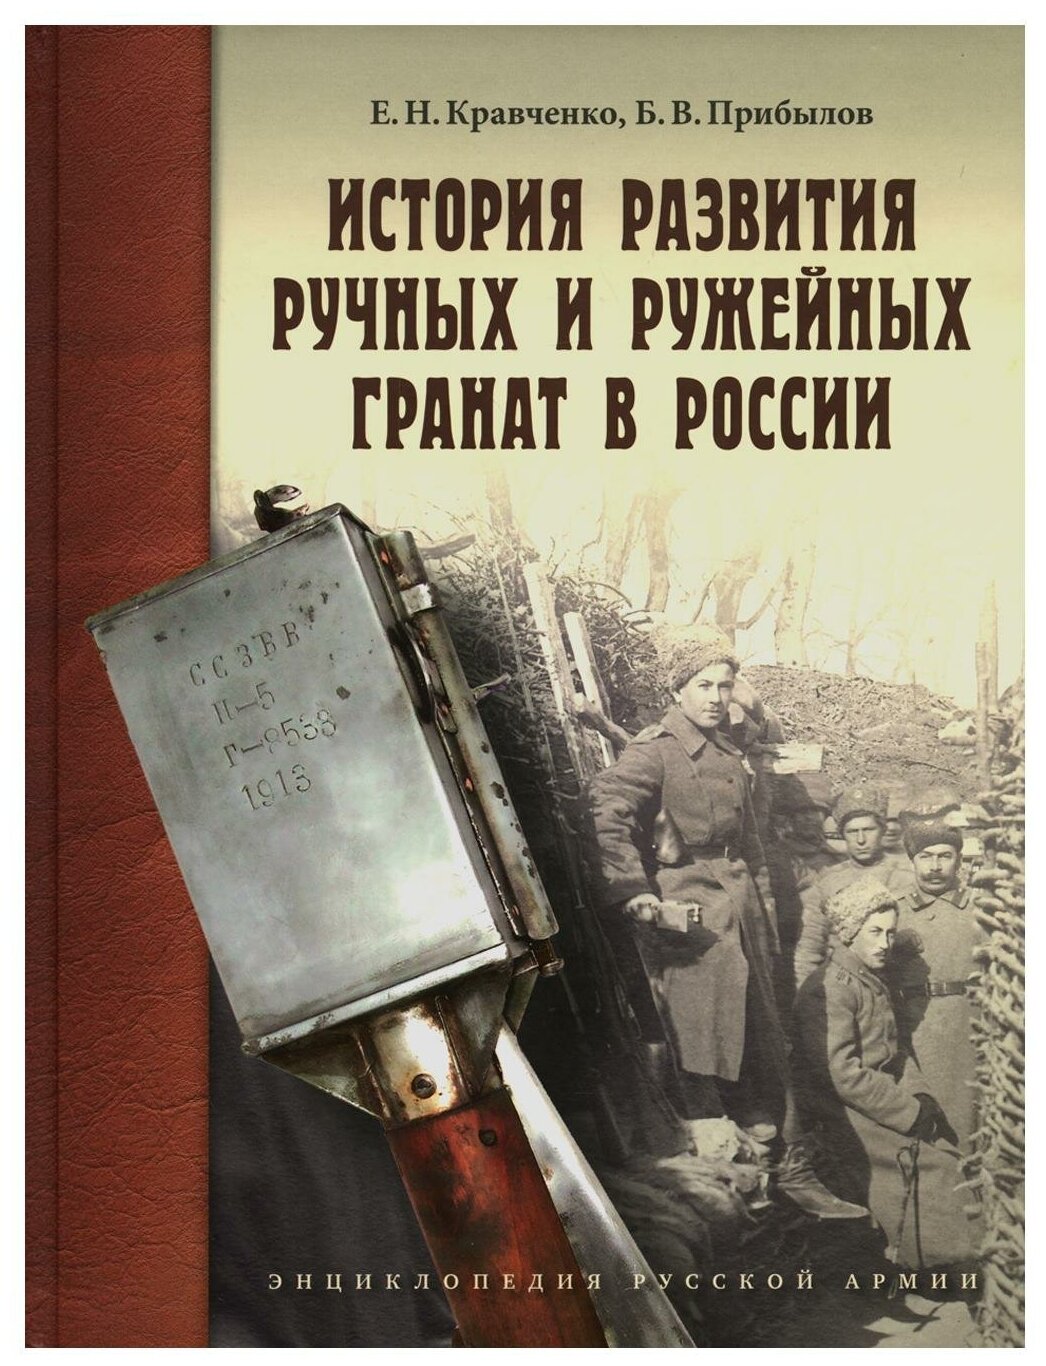 История развития ручных и ружейных гранат в России - фото №1